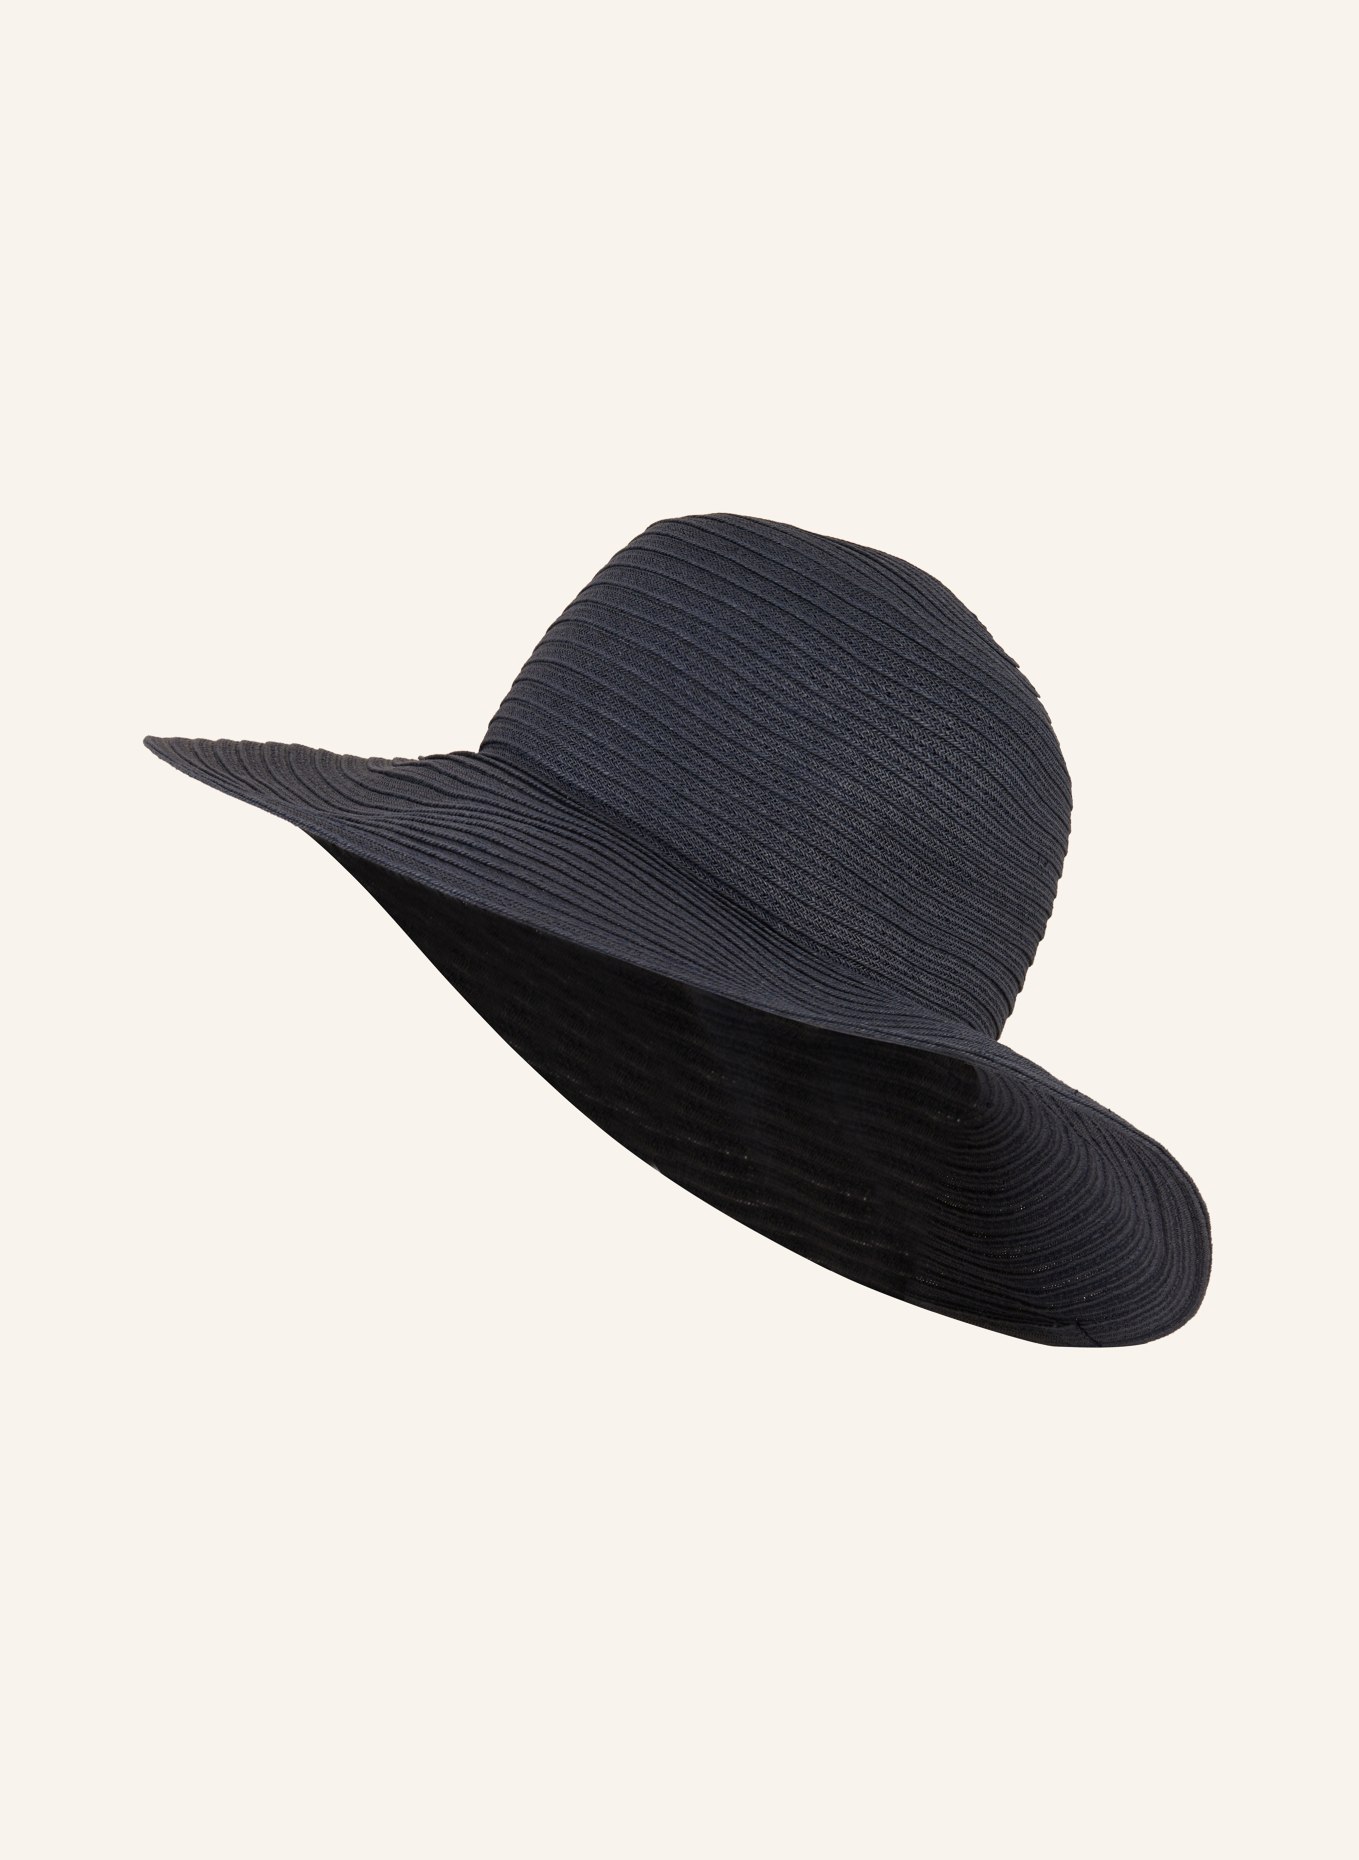 SEEBERGER Straw hat, Color: DARK BLUE (Image 1)